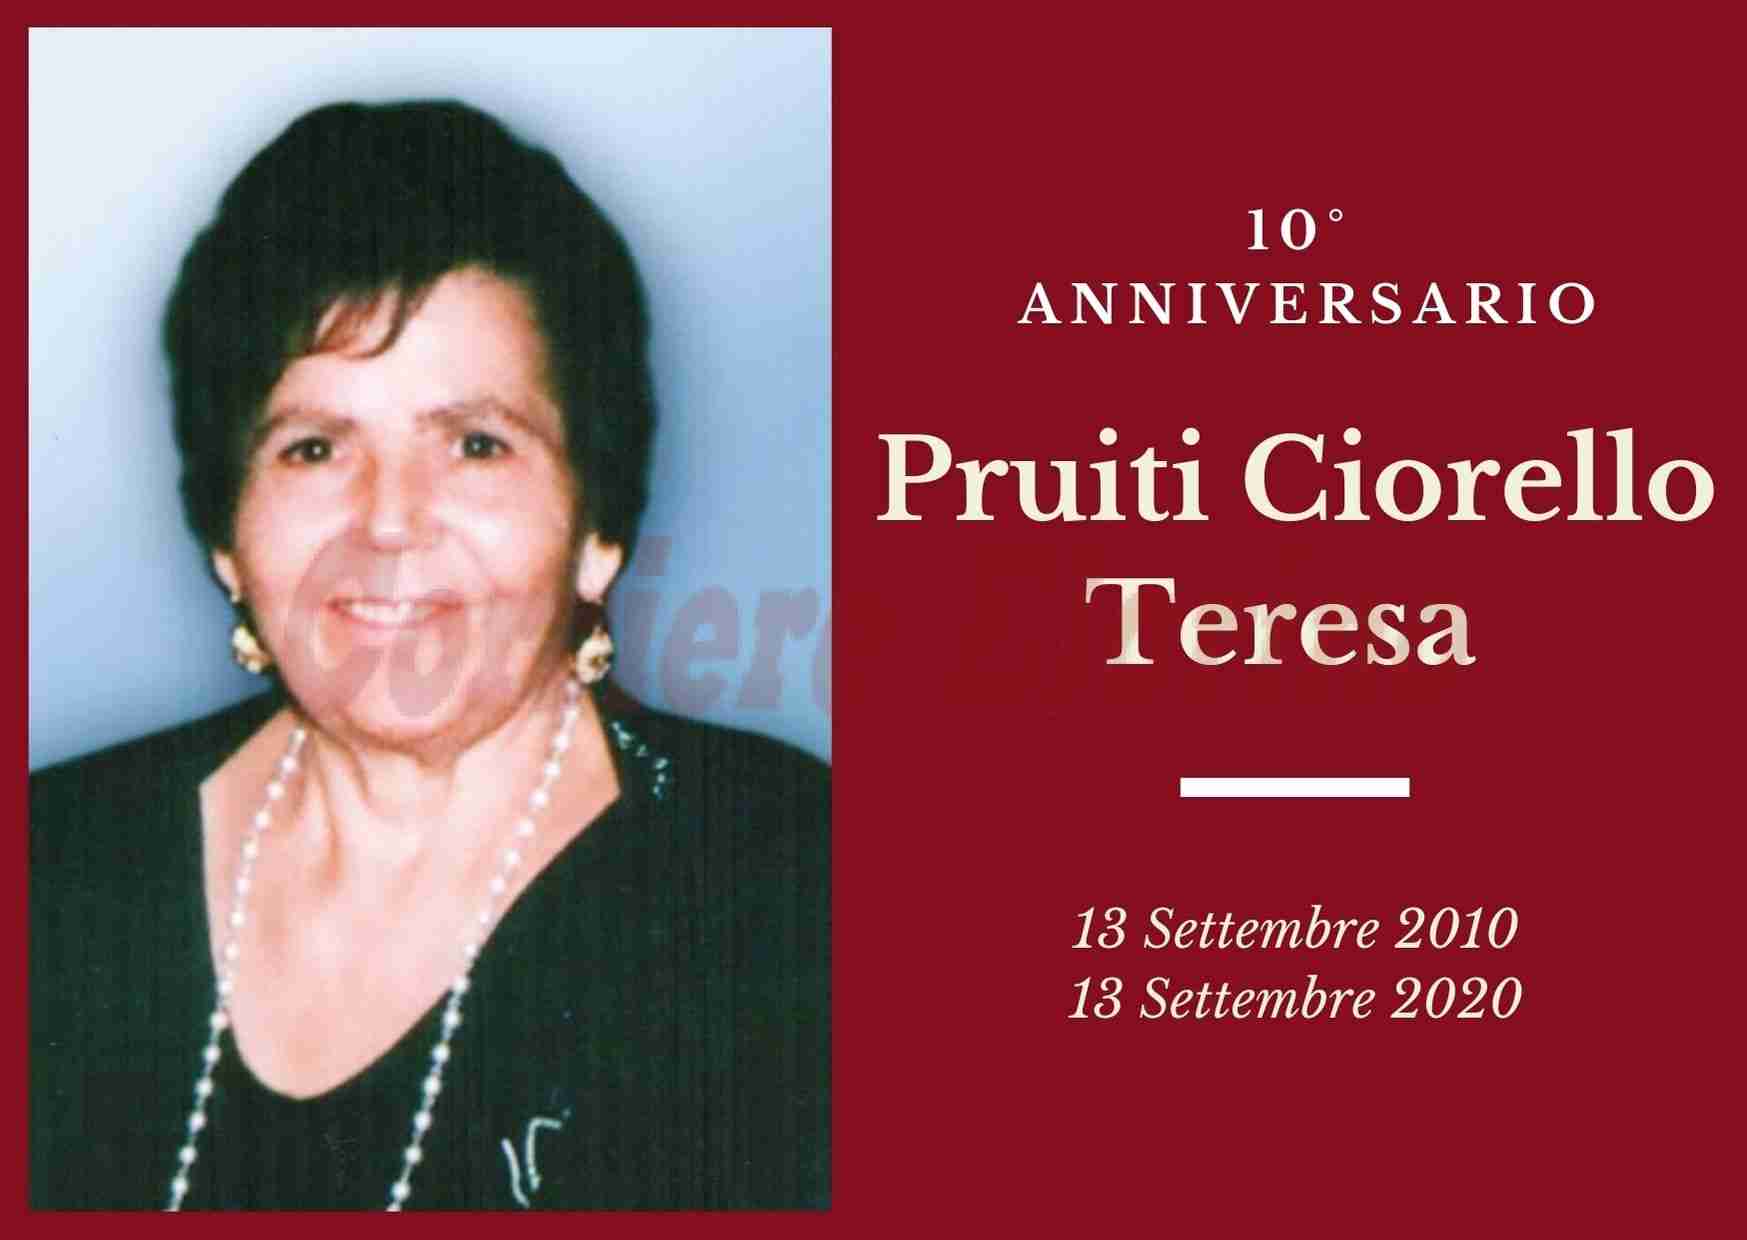 Necrologio: ricorre oggi il 10° Anniversario di Teresa Pruiti Ciorello